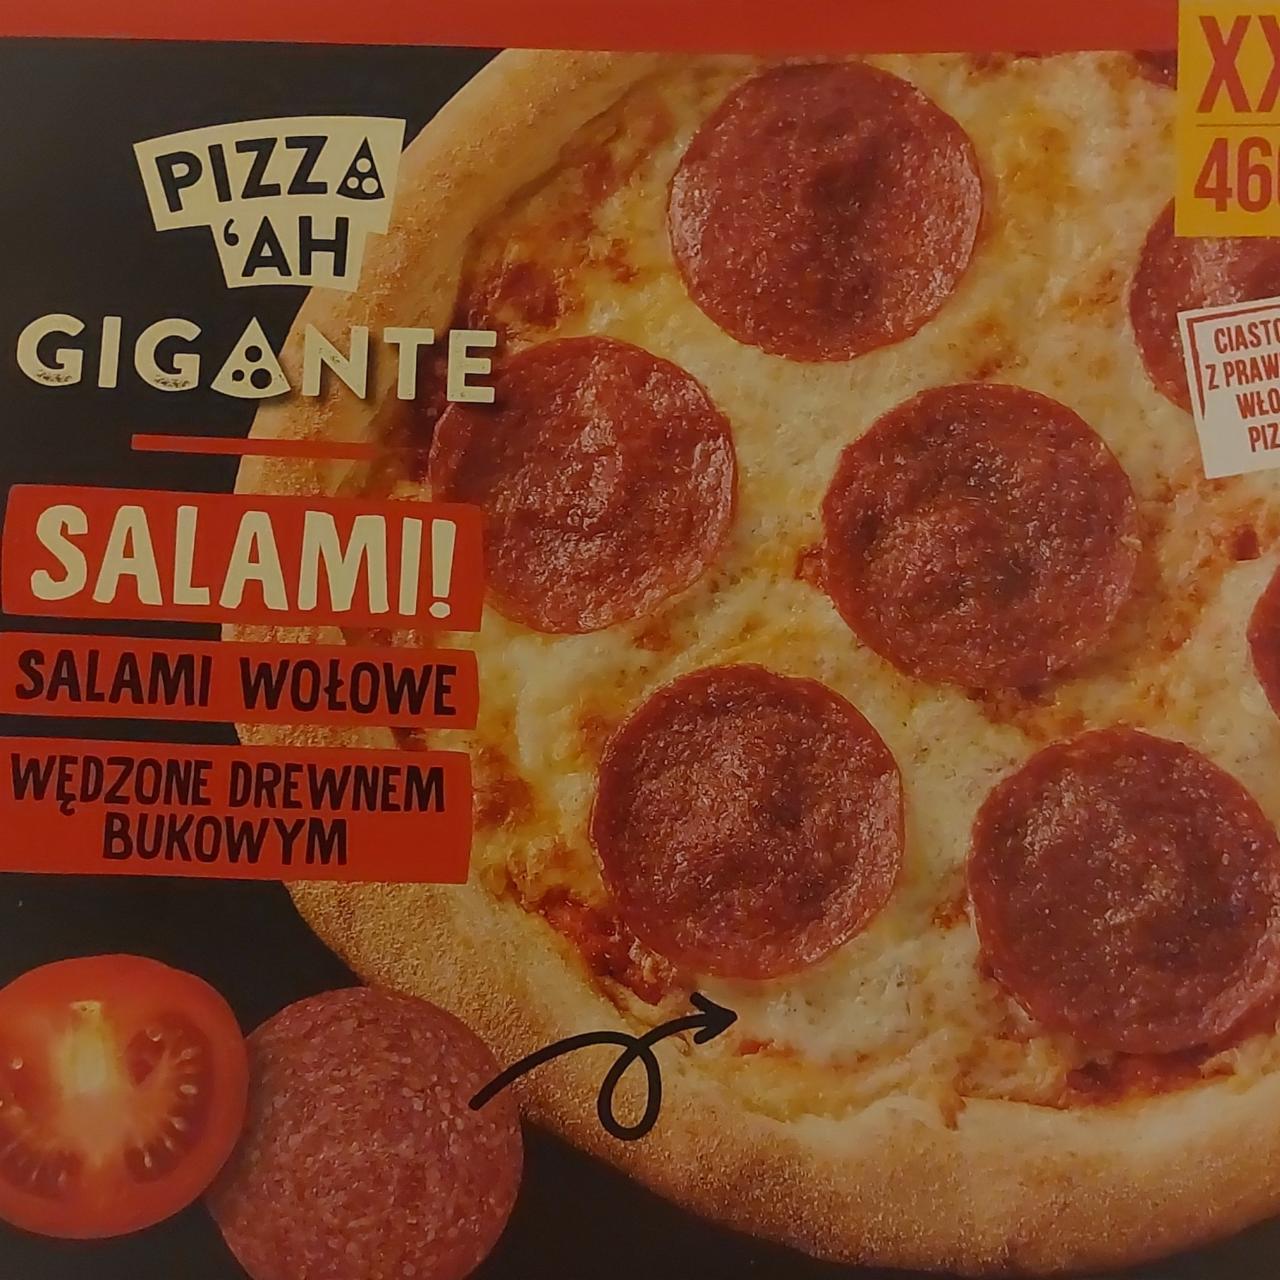 Zdjęcia - pizza gigante salami wołowe Pizza 'Ah